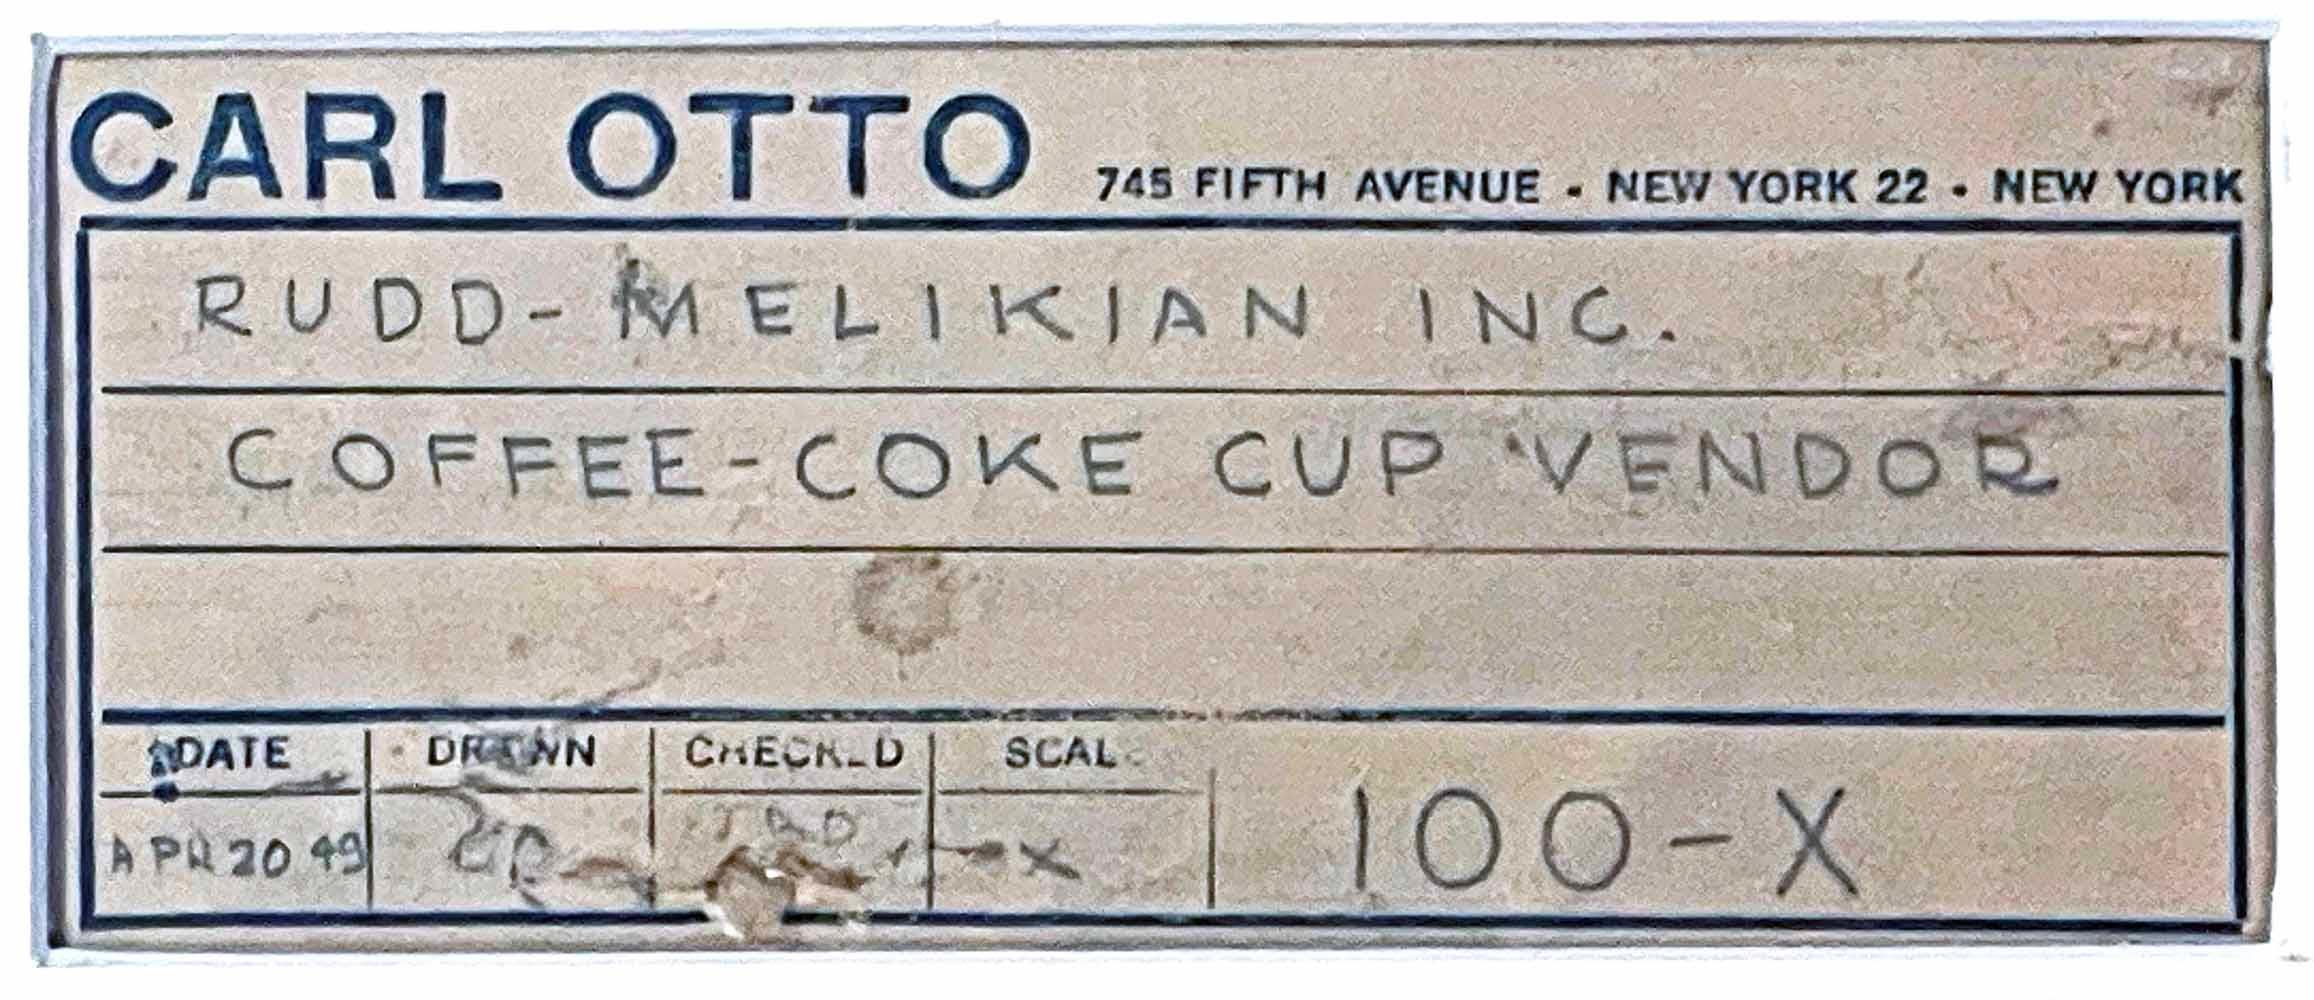 1964 coke machine